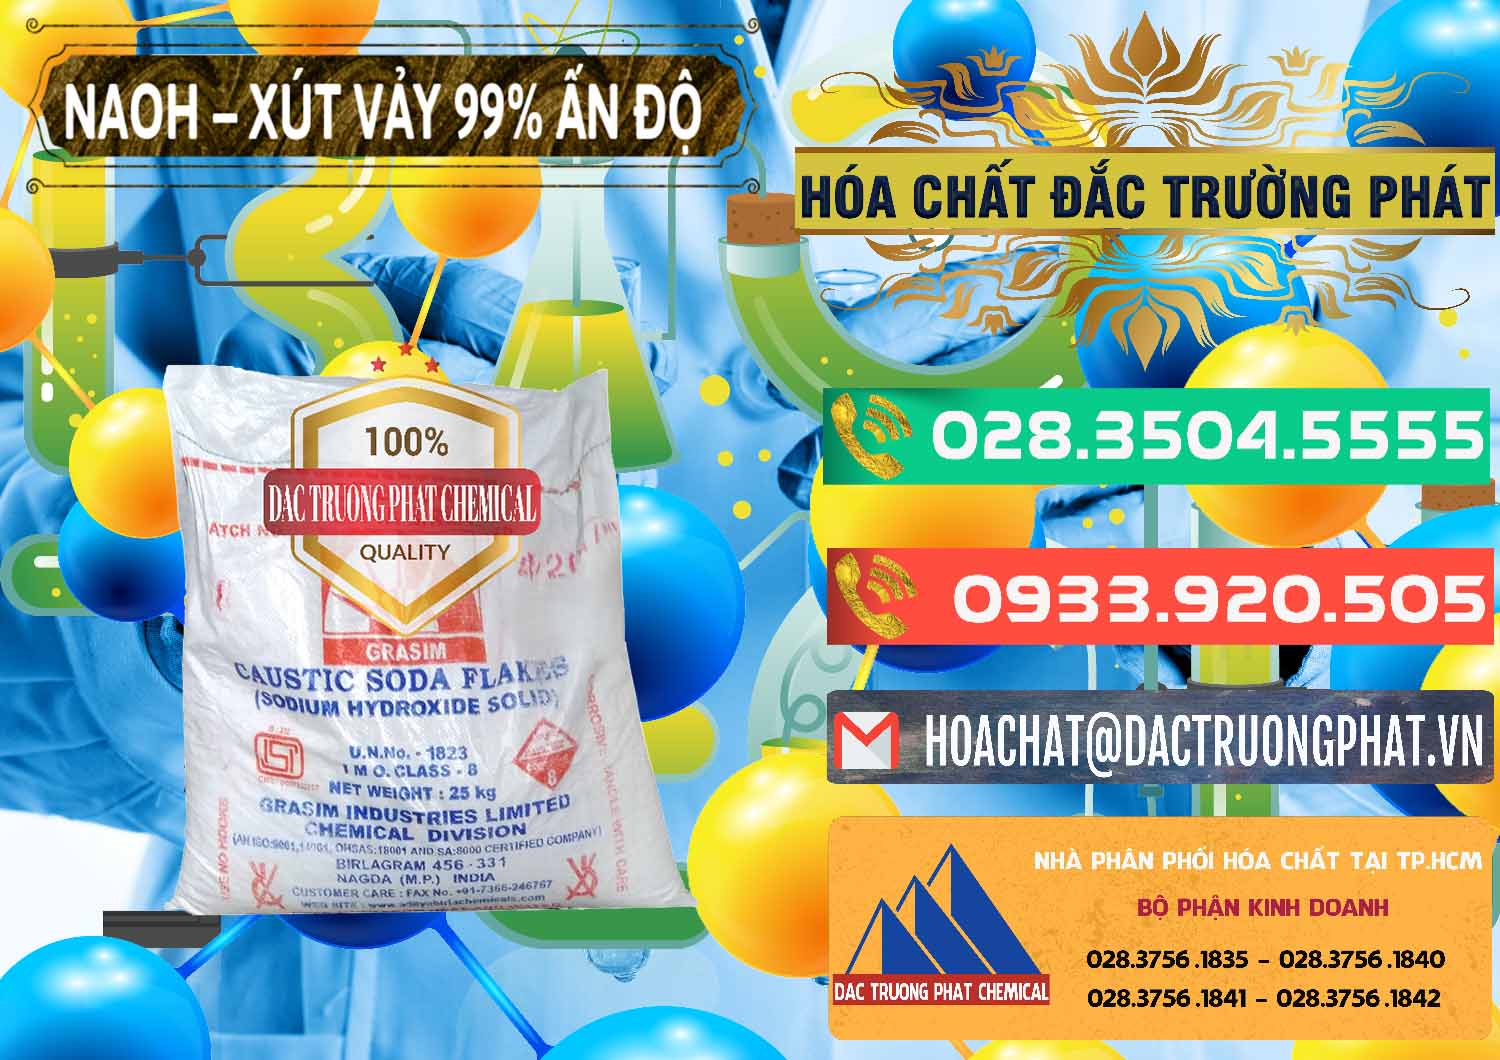 Cty chuyên phân phối ( bán ) Xút Vảy - NaOH Vảy 99% Aditya Birla Grasim Ấn Độ India - 0171 - Nơi chuyên nhập khẩu ( phân phối ) hóa chất tại TP.HCM - congtyhoachat.com.vn